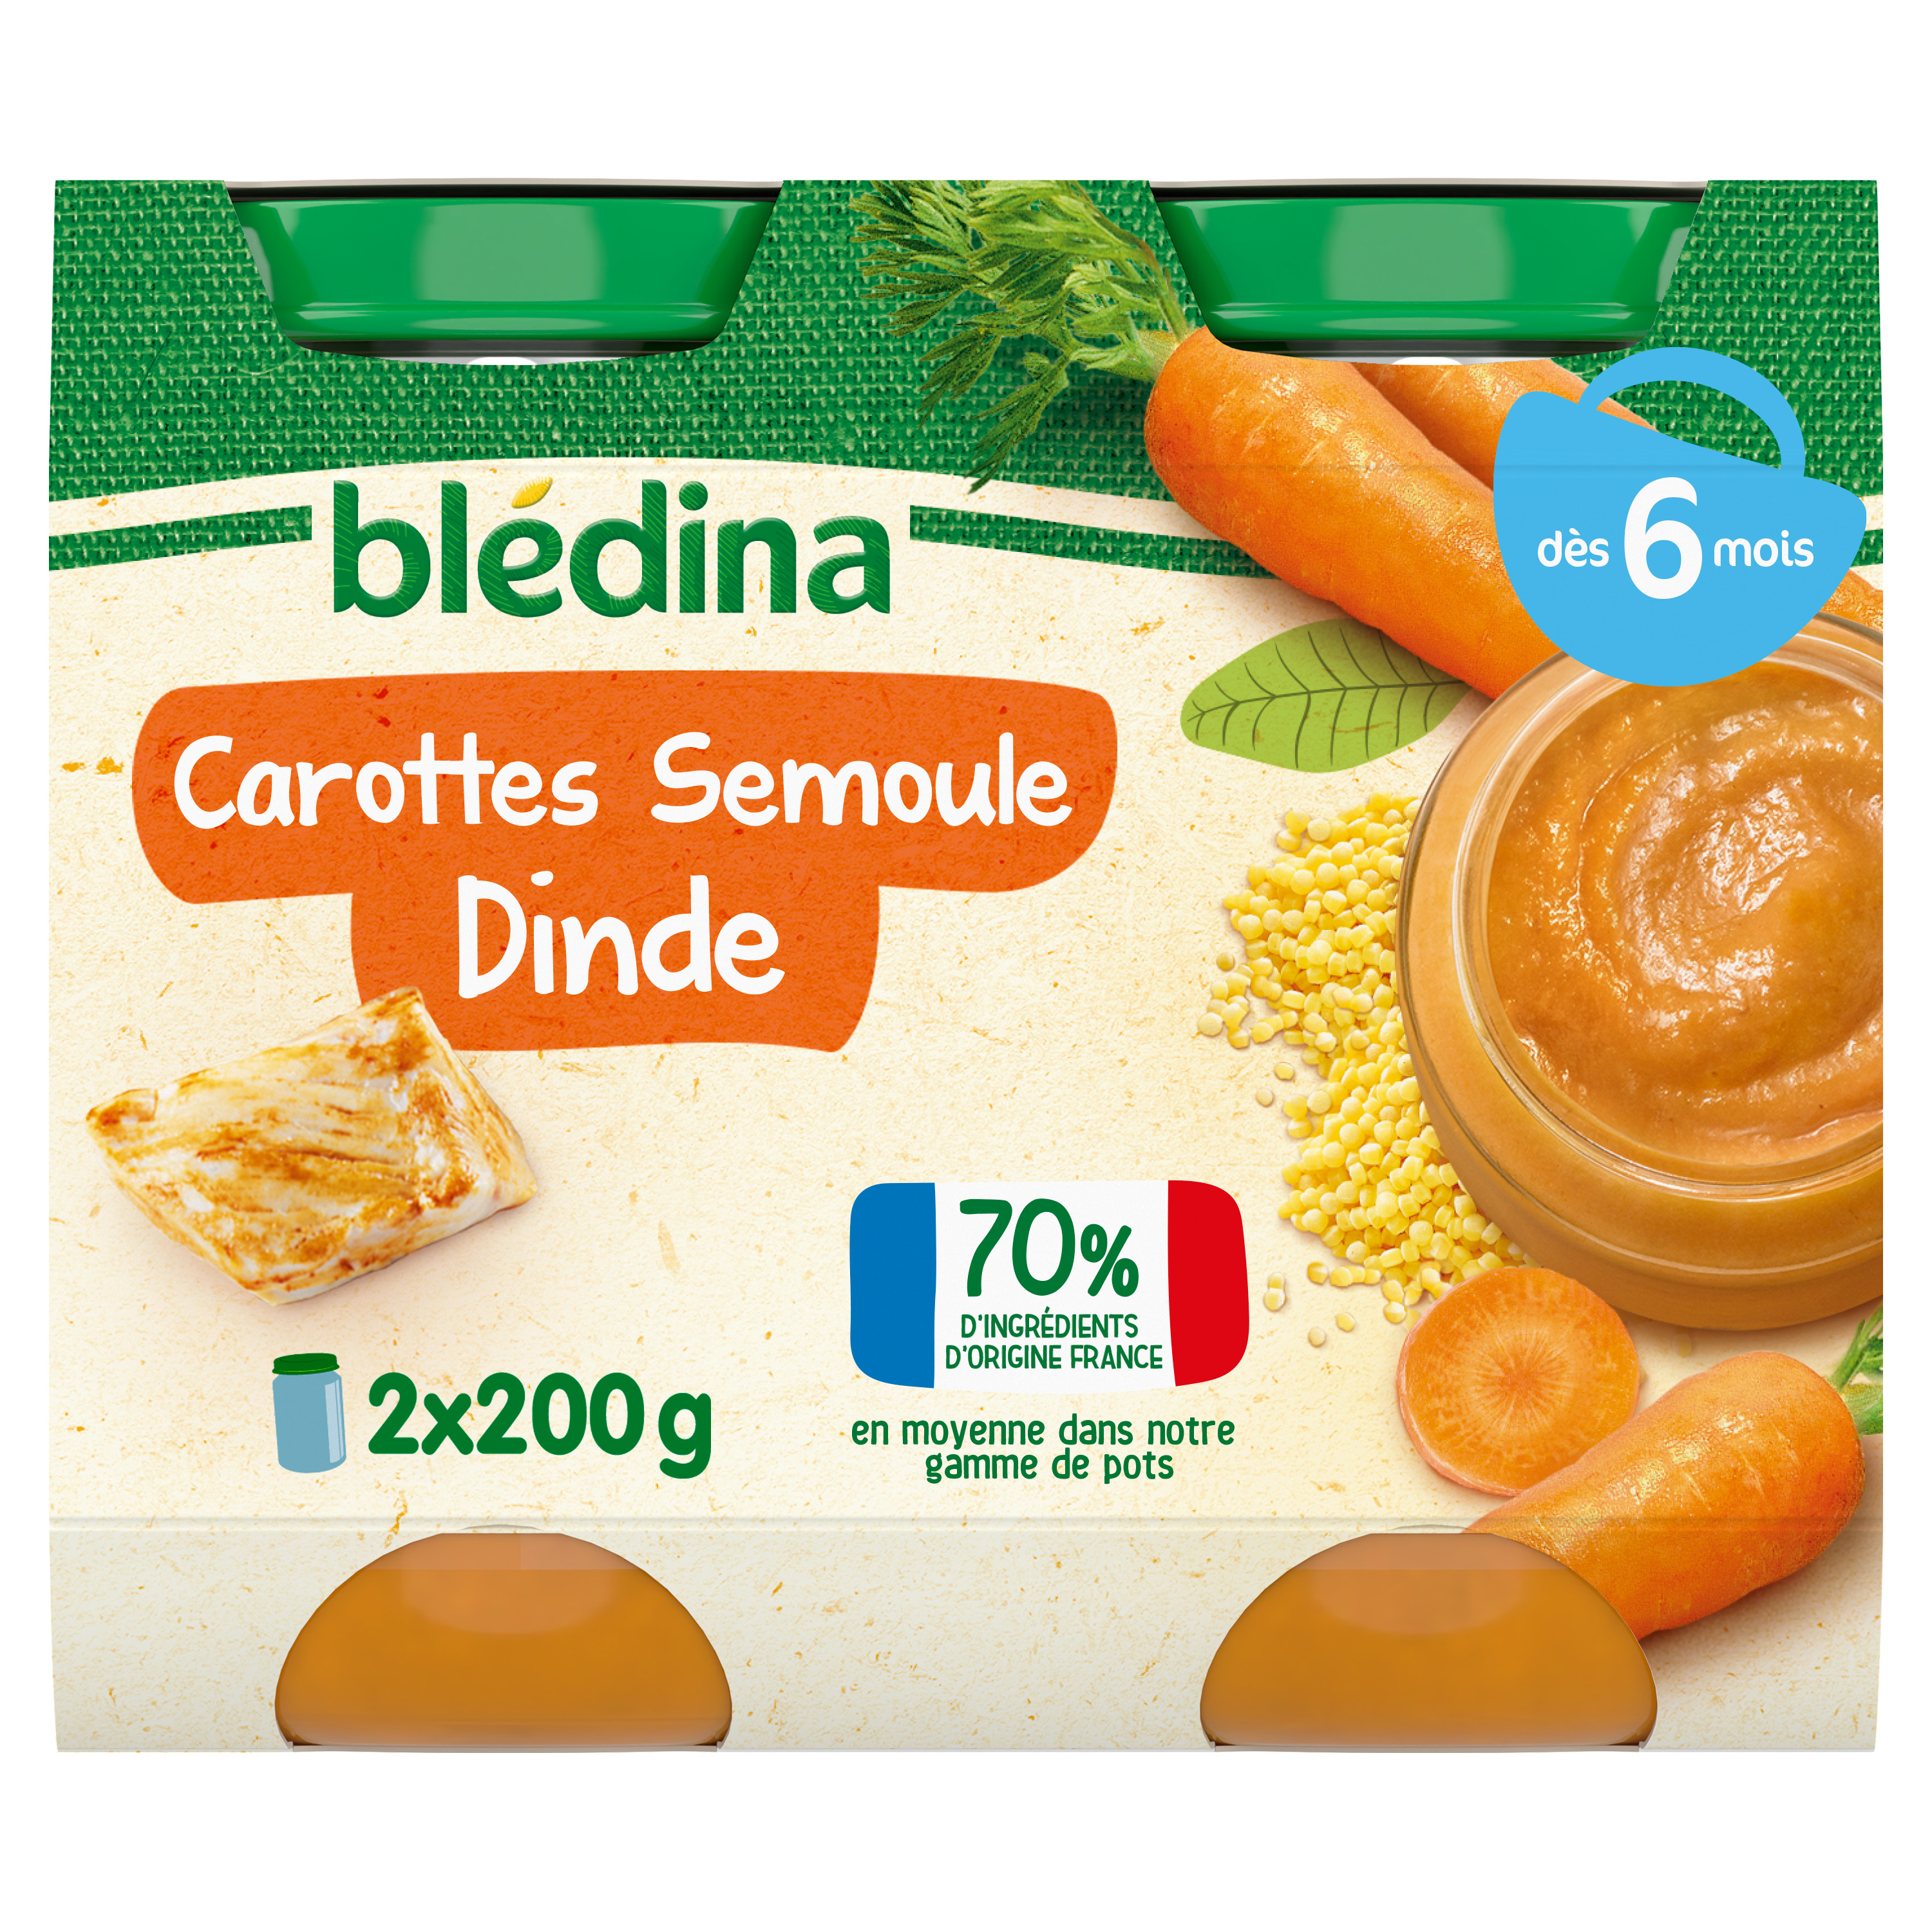 Petit pot bébé soir dès 6 mois carottes semoule Blédiner BLEDINA